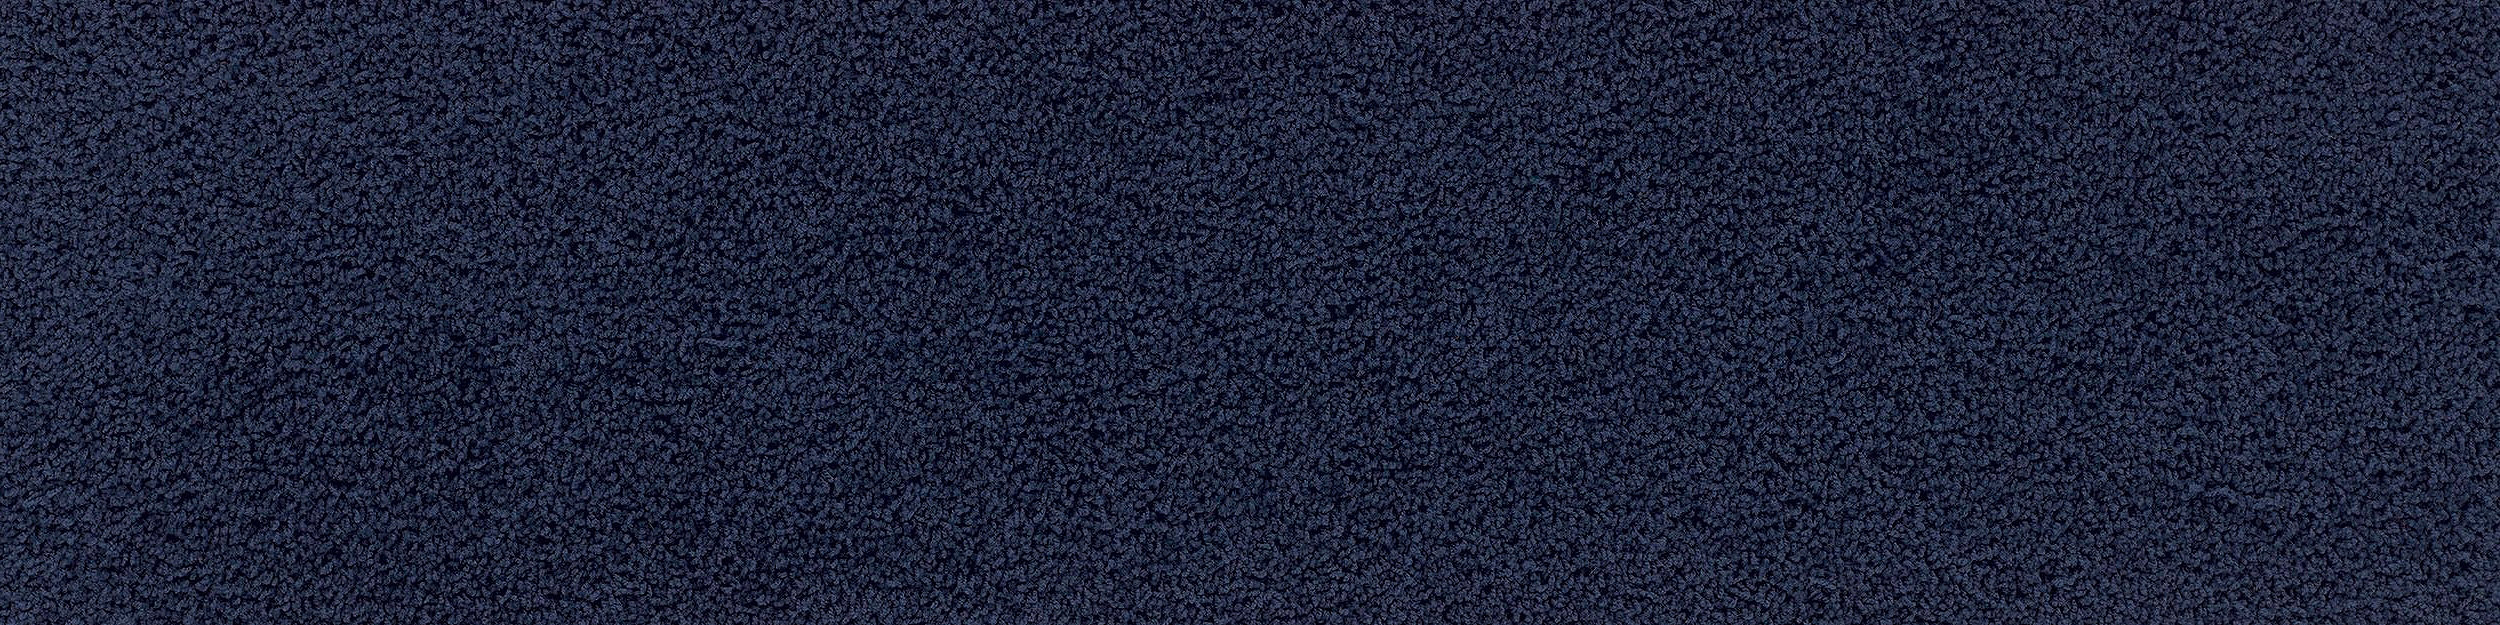 HN830 Carpet Tile In Cobalt image number 10